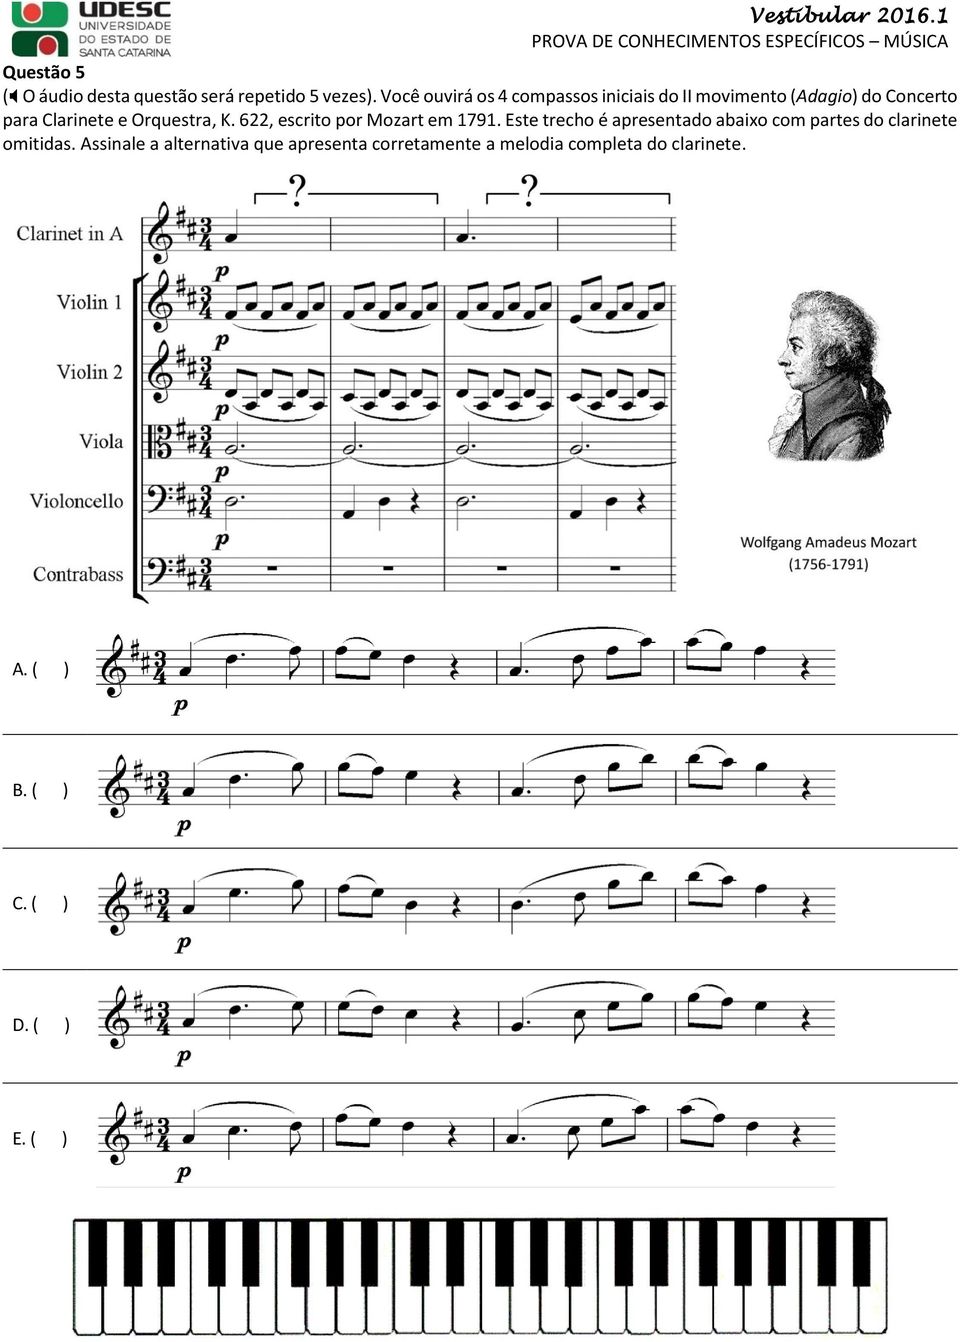 Orquestra, K. 622, escrito por Mozart em 1791.